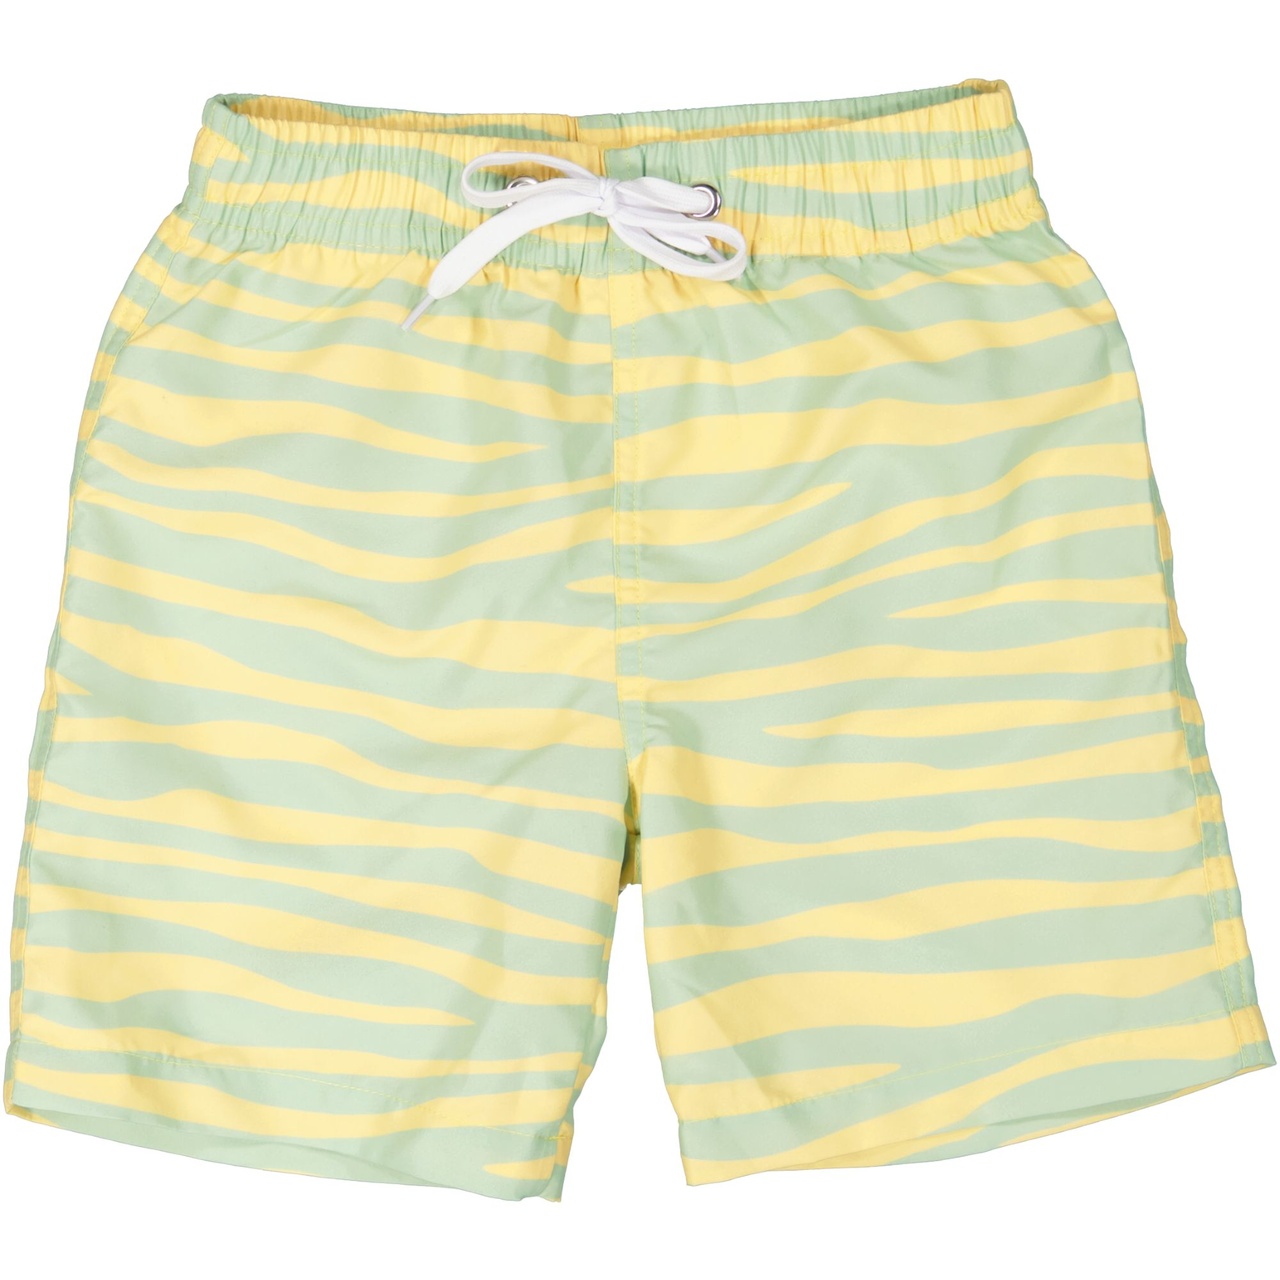 UV- Swim shorts Waves 02